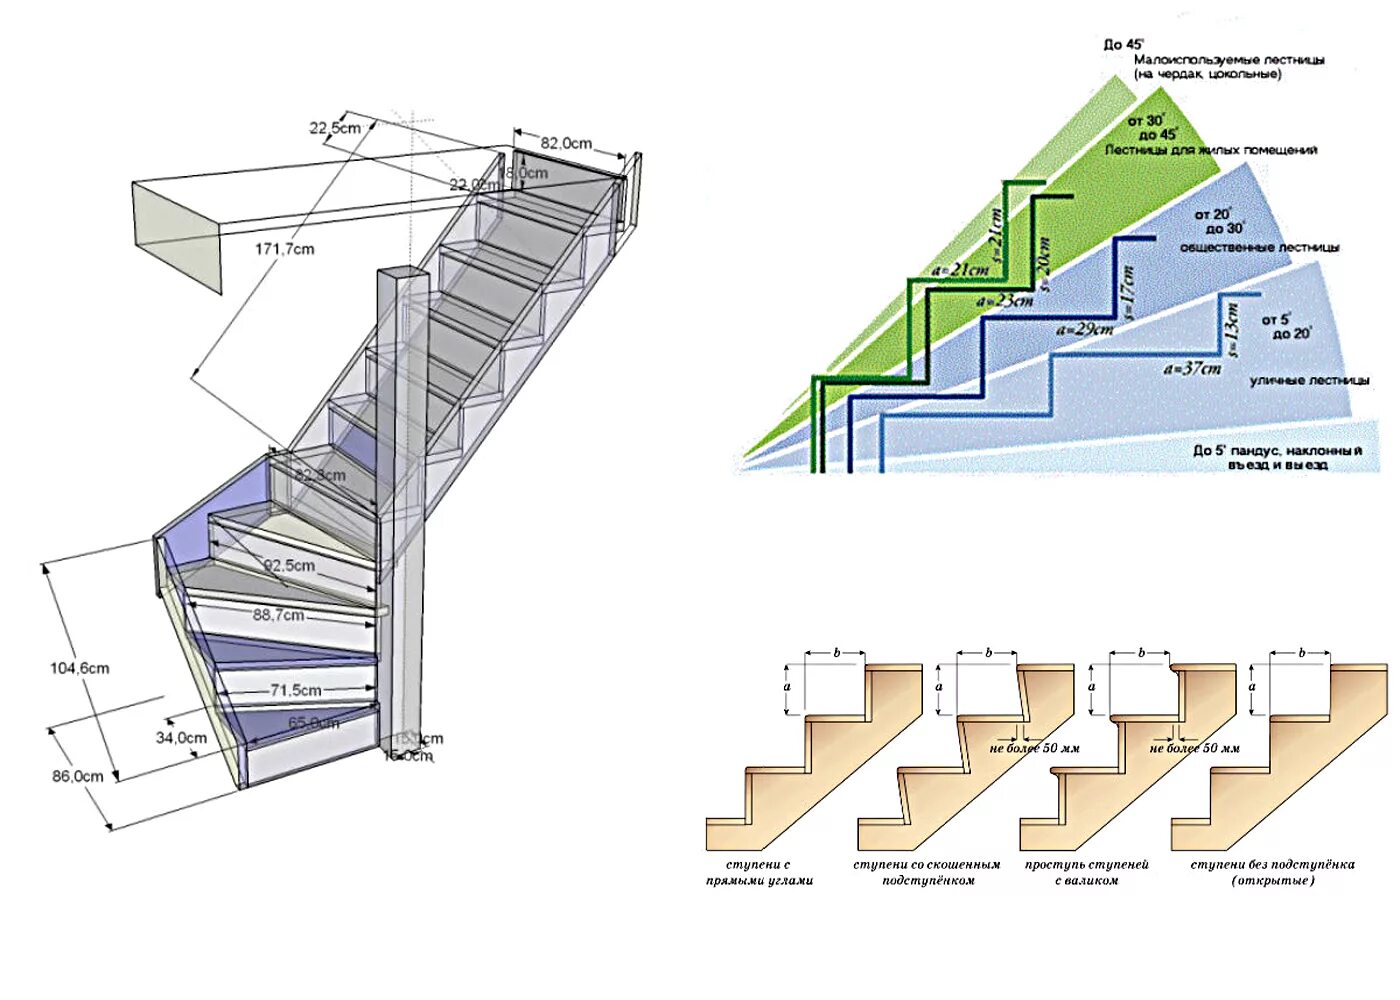 Как правильно рассчитать лестницу на 2 этаж. Ступени в лестницы 200 мм ширина. Маршевая лестница 60 гр шаг ступеней. Как рассчитать Размеры лестницы на 2 этаж.